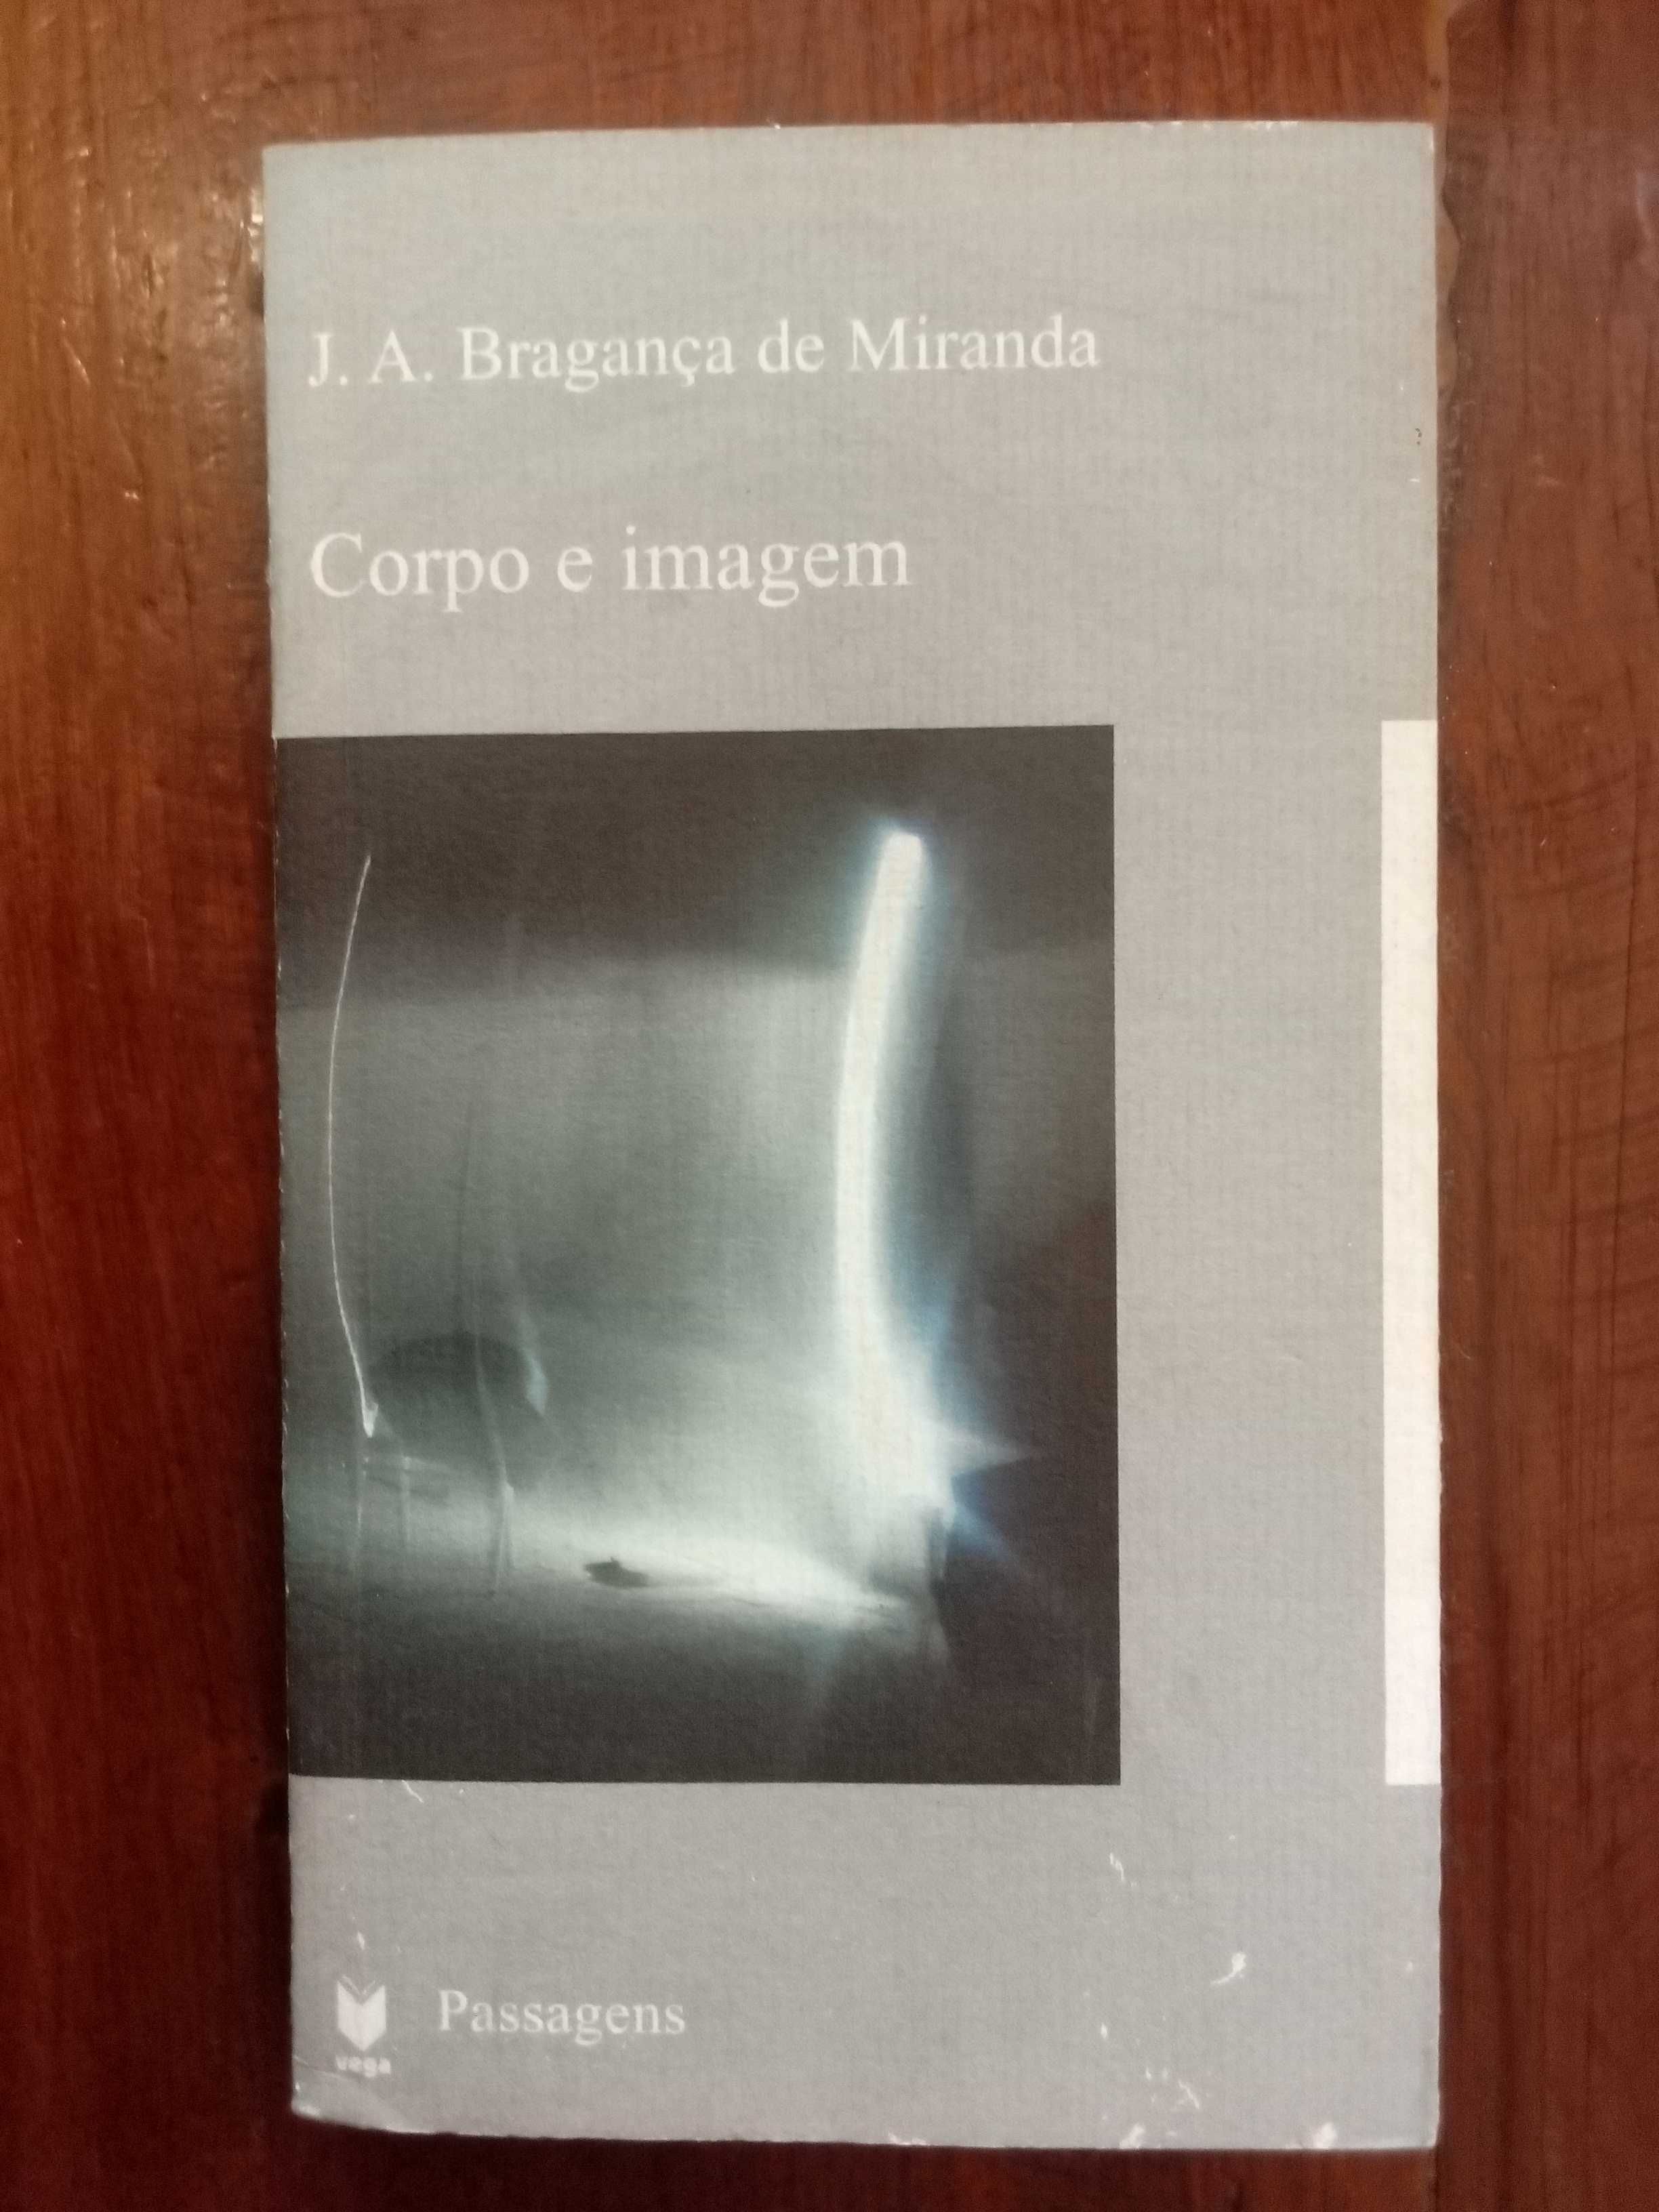 J. A. Bragança de Miranda - Corpo e imagem